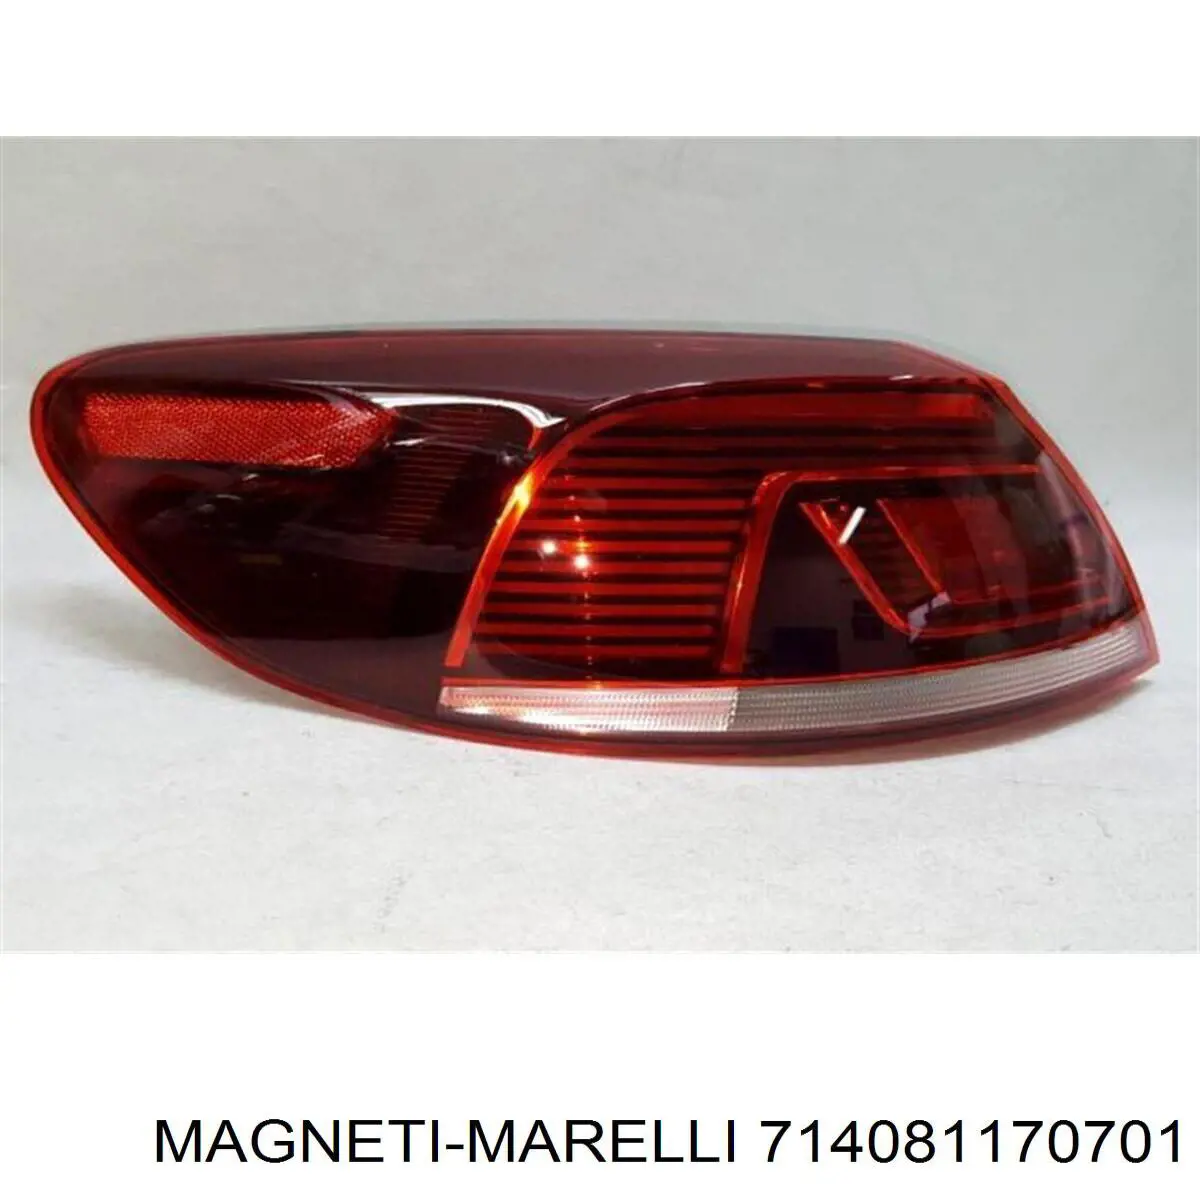 714081170701 Magneti Marelli piloto trasero exterior izquierdo